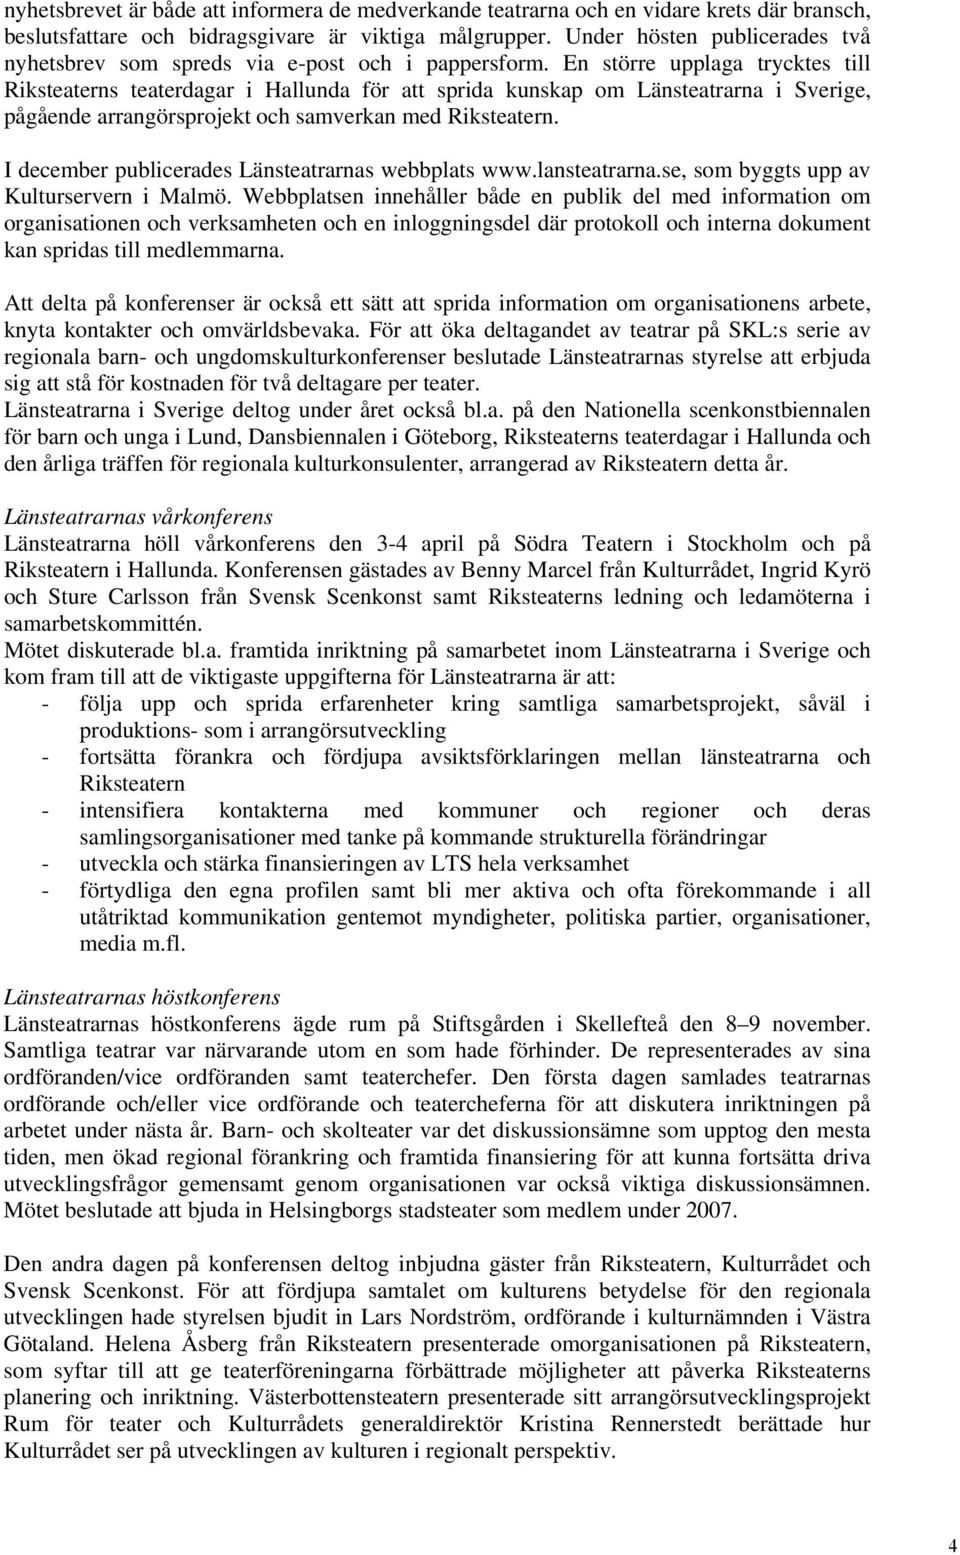 En större upplaga trycktes till Riksteaterns teaterdagar i Hallunda för att sprida kunskap om Länsteatrarna i Sverige, pågående arrangörsprojekt och samverkan med Riksteatern.